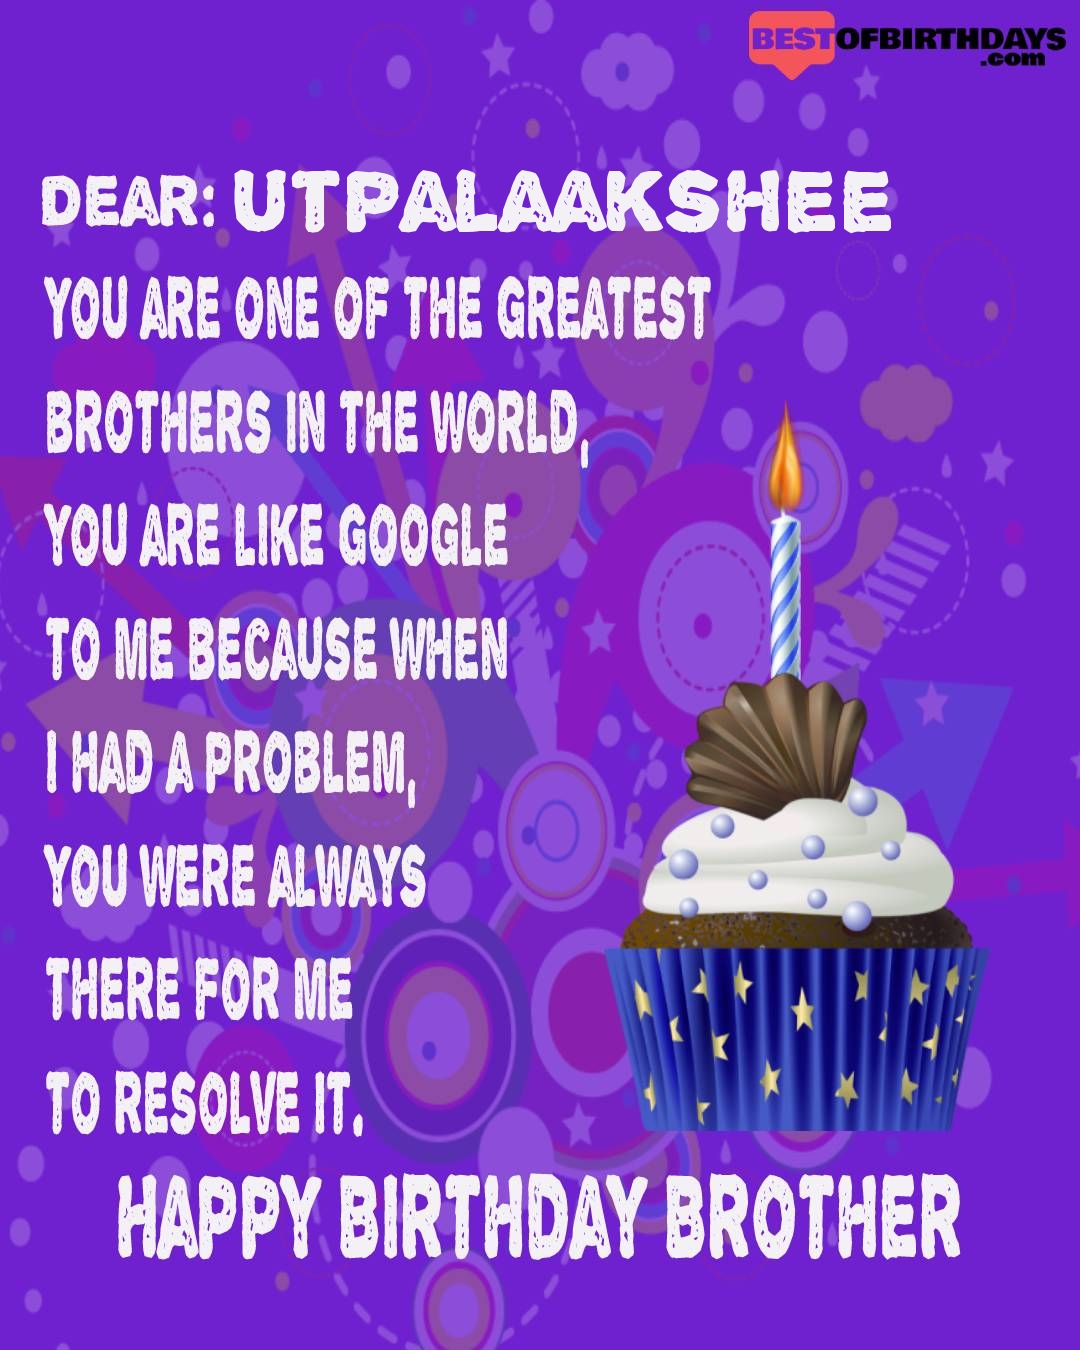 Happy birthday utpalaakshee bhai brother bro